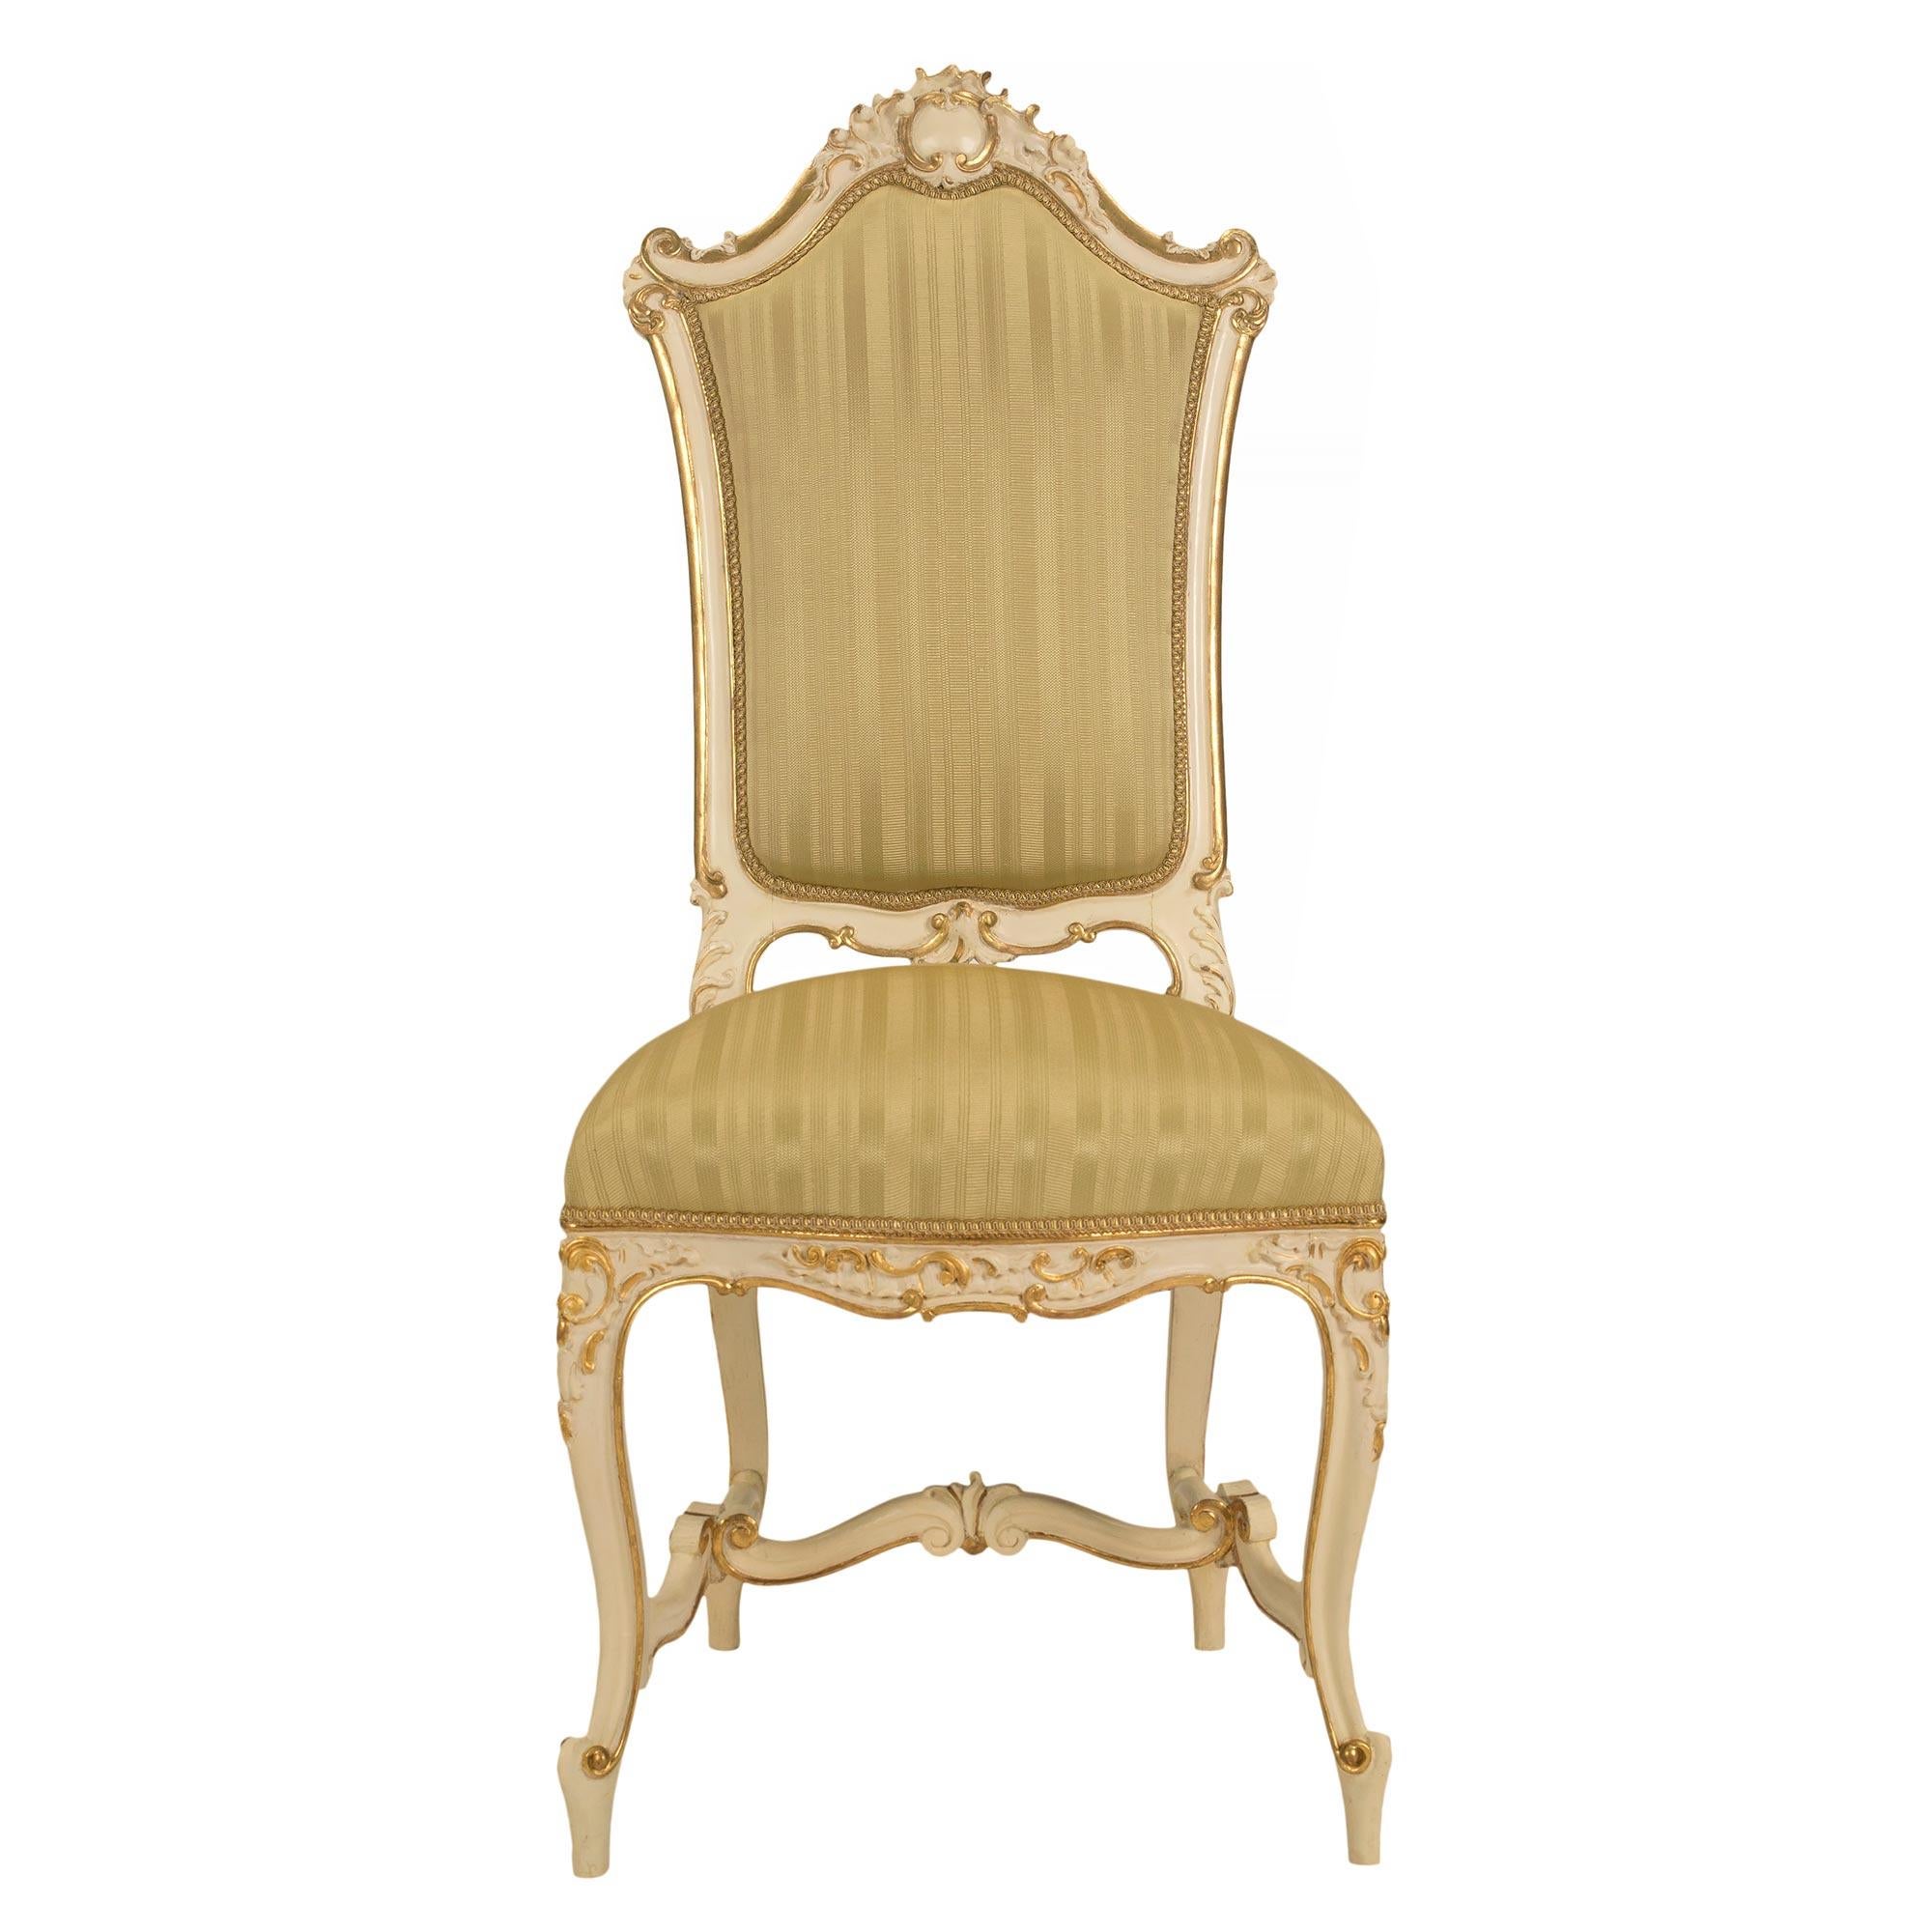 Un bel ensemble de haute qualité de huit chaises de salle à manger vénitiennes italiennes du 19ème siècle, patinées et en bois doré. Chaque chaise est surélevée par d'élégants pieds cabriole, attachés par une civière en forme de H à volutes avec des